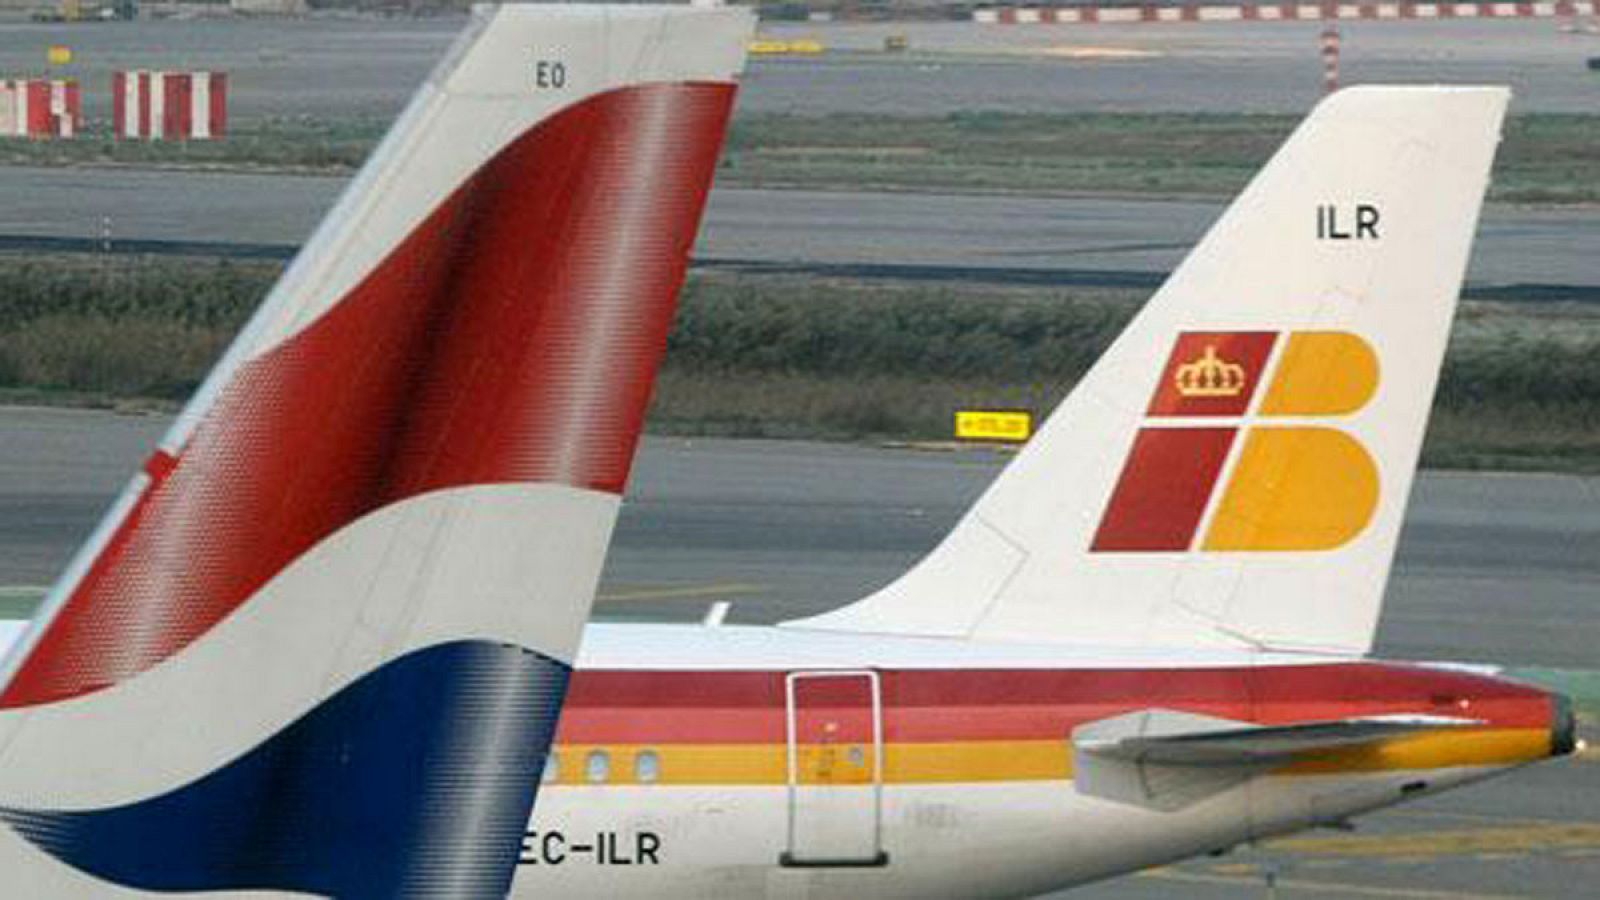 Aviones de British Airways e Iberia en las pistas del aeropuerto madrileño de Barajas